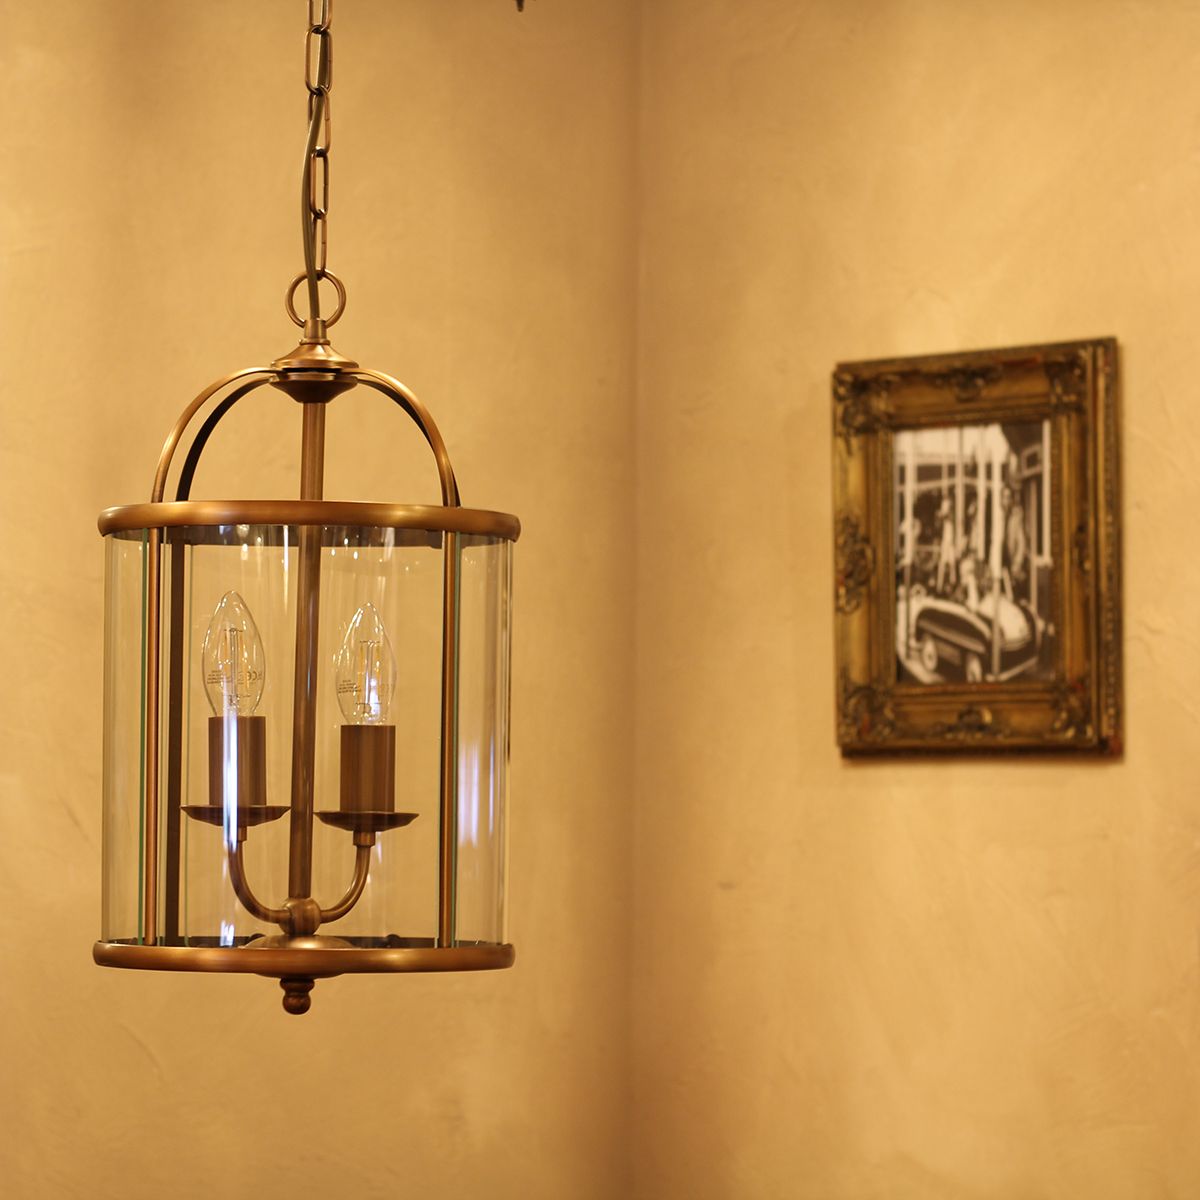 Billede af Glamour - loftlampe i bronze og glas, diameter 23 cm.